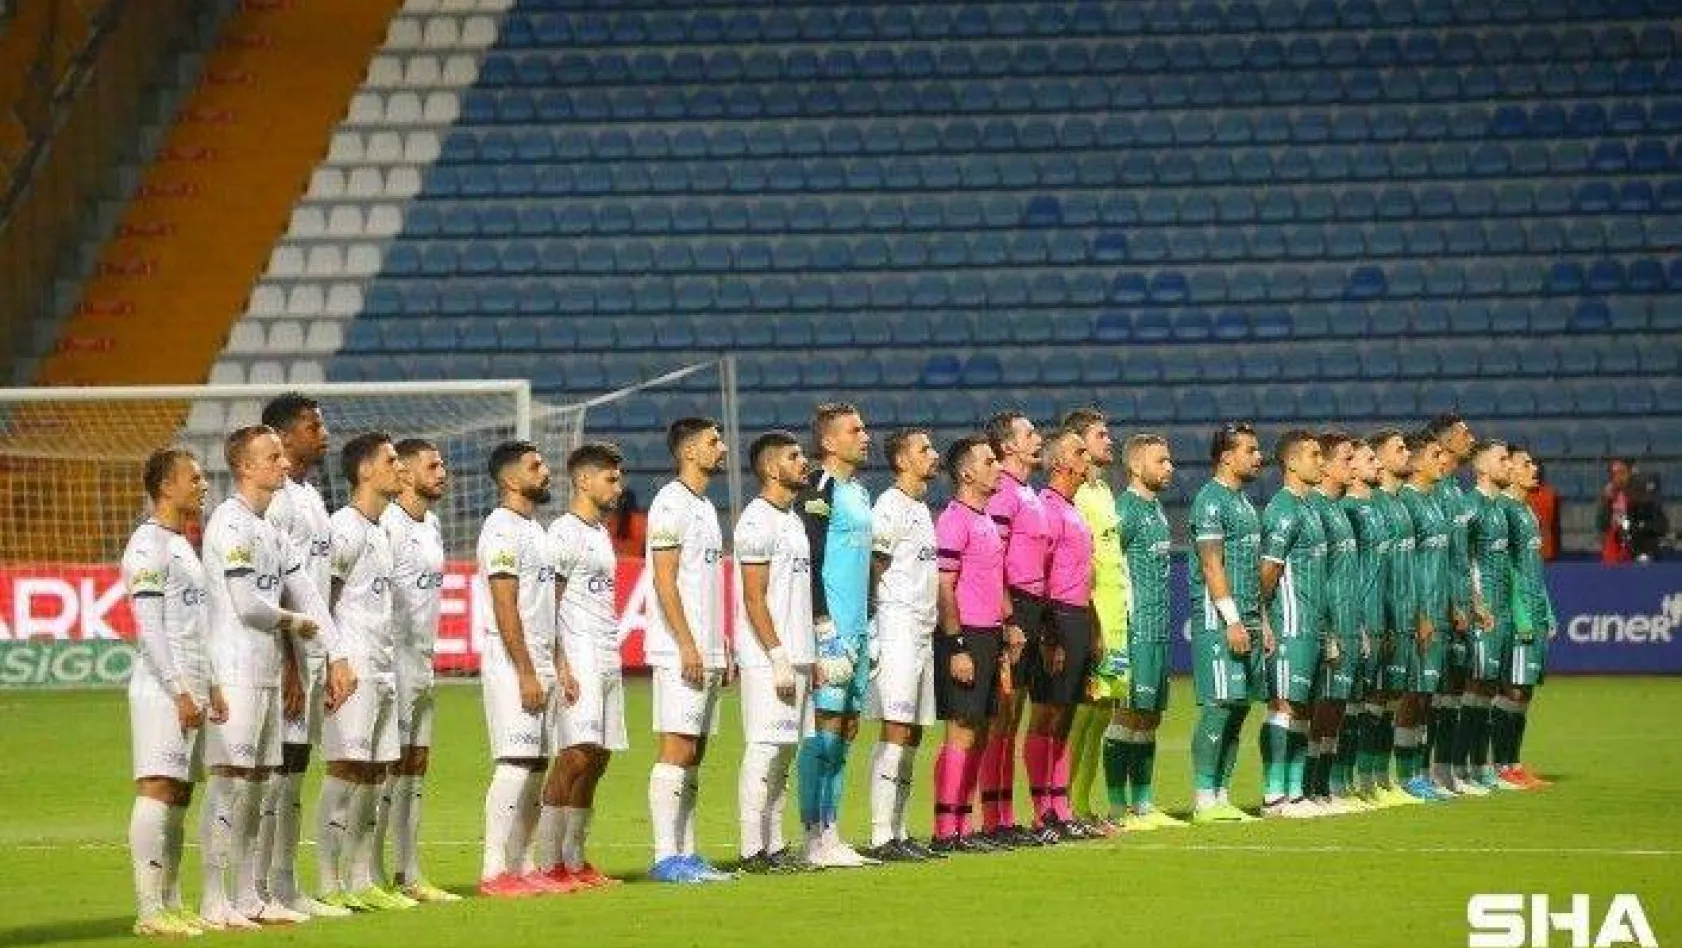 Süper Lig: Kasımpaşa: 1 - Konyaspor: 2 (Maç devam ediyor)